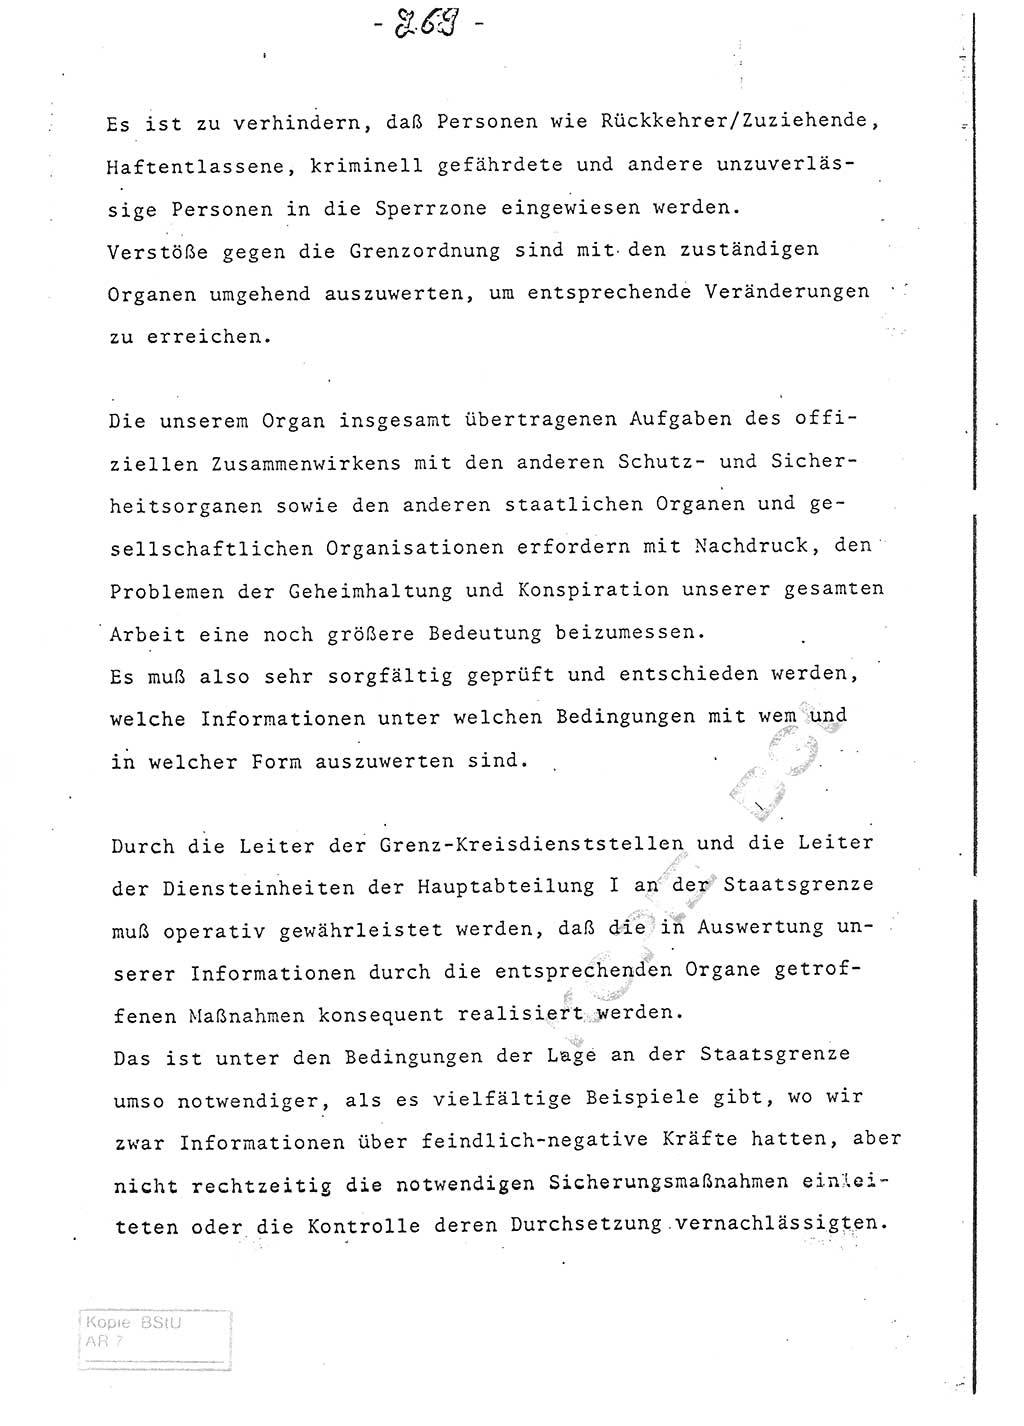 Referat (Entwurf) des Genossen Minister (Generaloberst Erich Mielke) auf der Dienstkonferenz 1972, Ministerium für Staatssicherheit (MfS) [Deutsche Demokratische Republik (DDR)], Der Minister, Geheime Verschlußsache (GVS) 008-150/72, Berlin 25.2.1972, Seite 269 (Ref. Entw. DK MfS DDR Min. GVS 008-150/72 1972, S. 269)